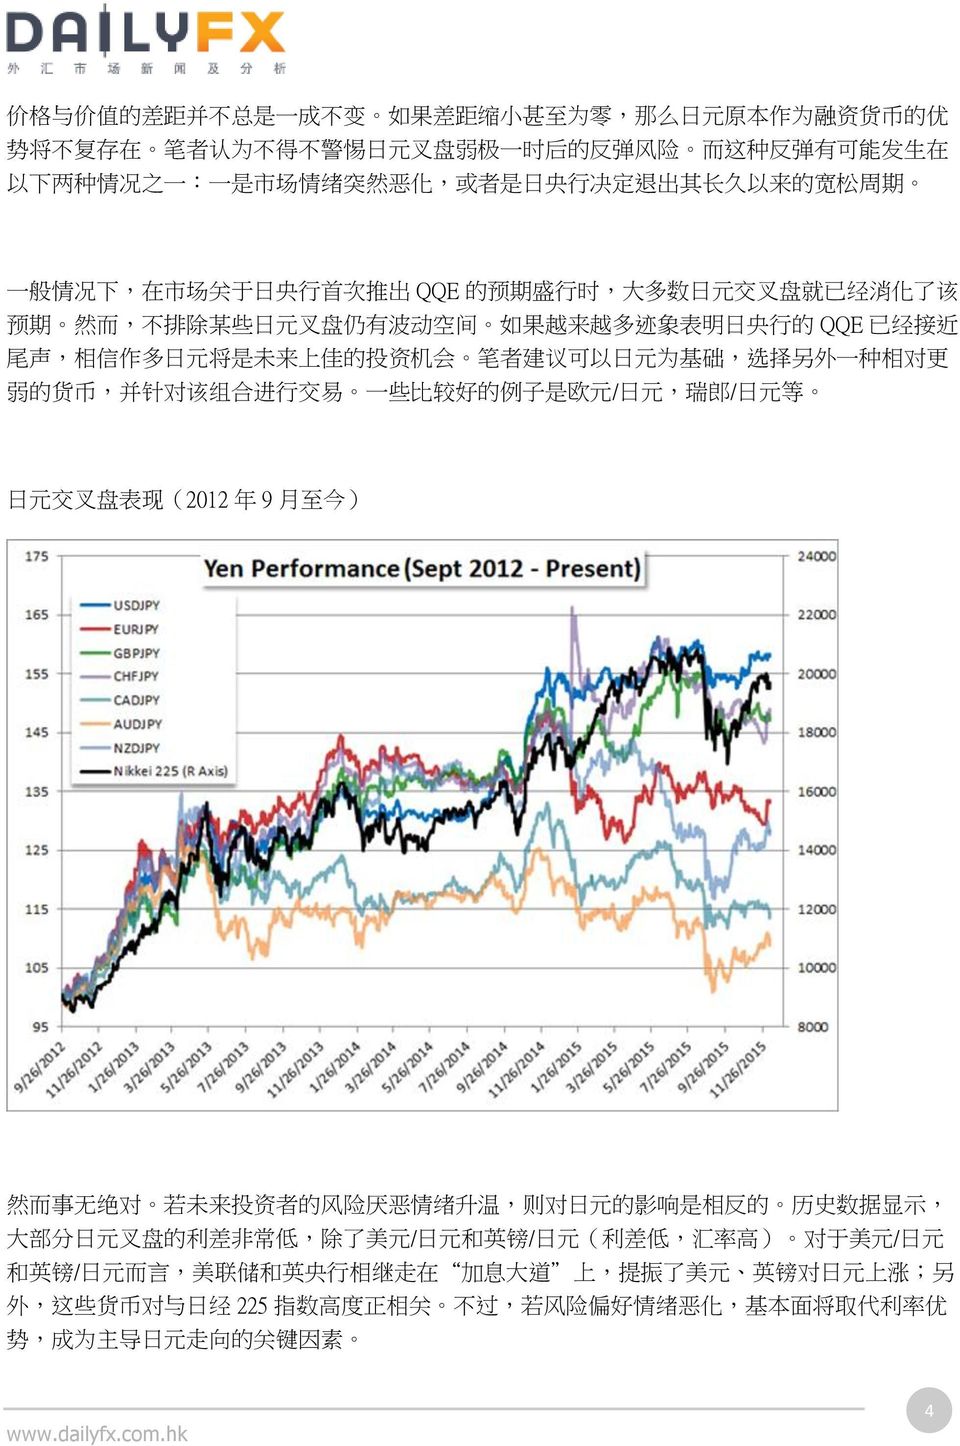 近 尾 声, 相 信 作 多 日 元 将 是 未 来 上 佳 的 投 资 机 会 笔 者 建 议 可 以 日 元 为 基 础, 选 择 另 外 一 种 相 对 更 弱 的 货 币, 并 针 对 该 组 合 进 行 交 易 一 些 比 较 好 的 例 子 是 欧 元 / 日 元, 瑞 郎 / 日 元 等 日 元 交 叉 盘 表 现 (2012 年 9 月 至 今 ) 然 而 事 无 绝 对 若 未